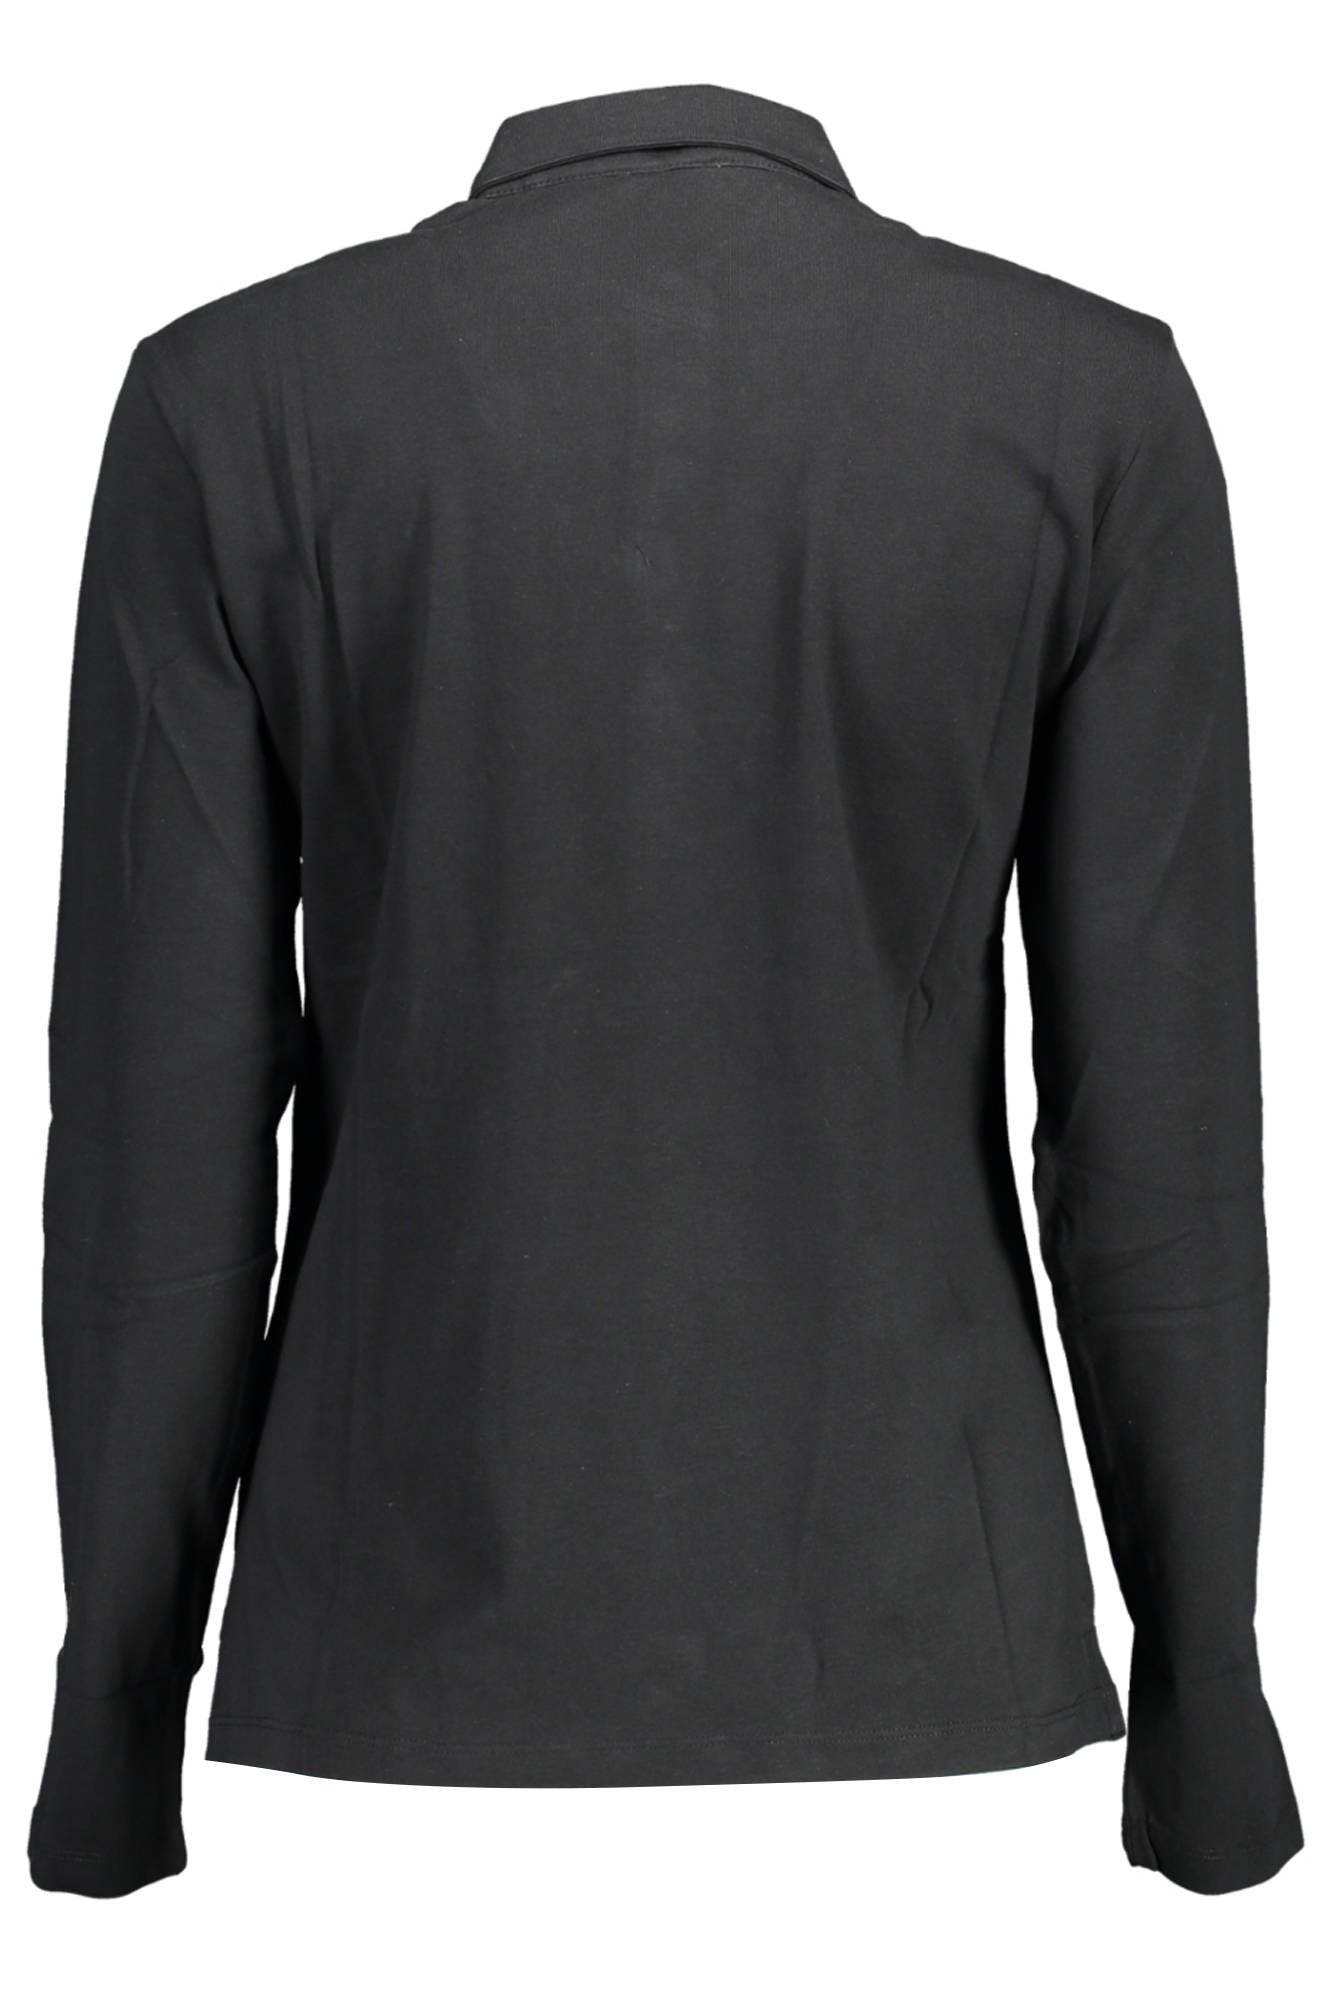 U.S. Polo Assn. Black Cotton Polo Shirt